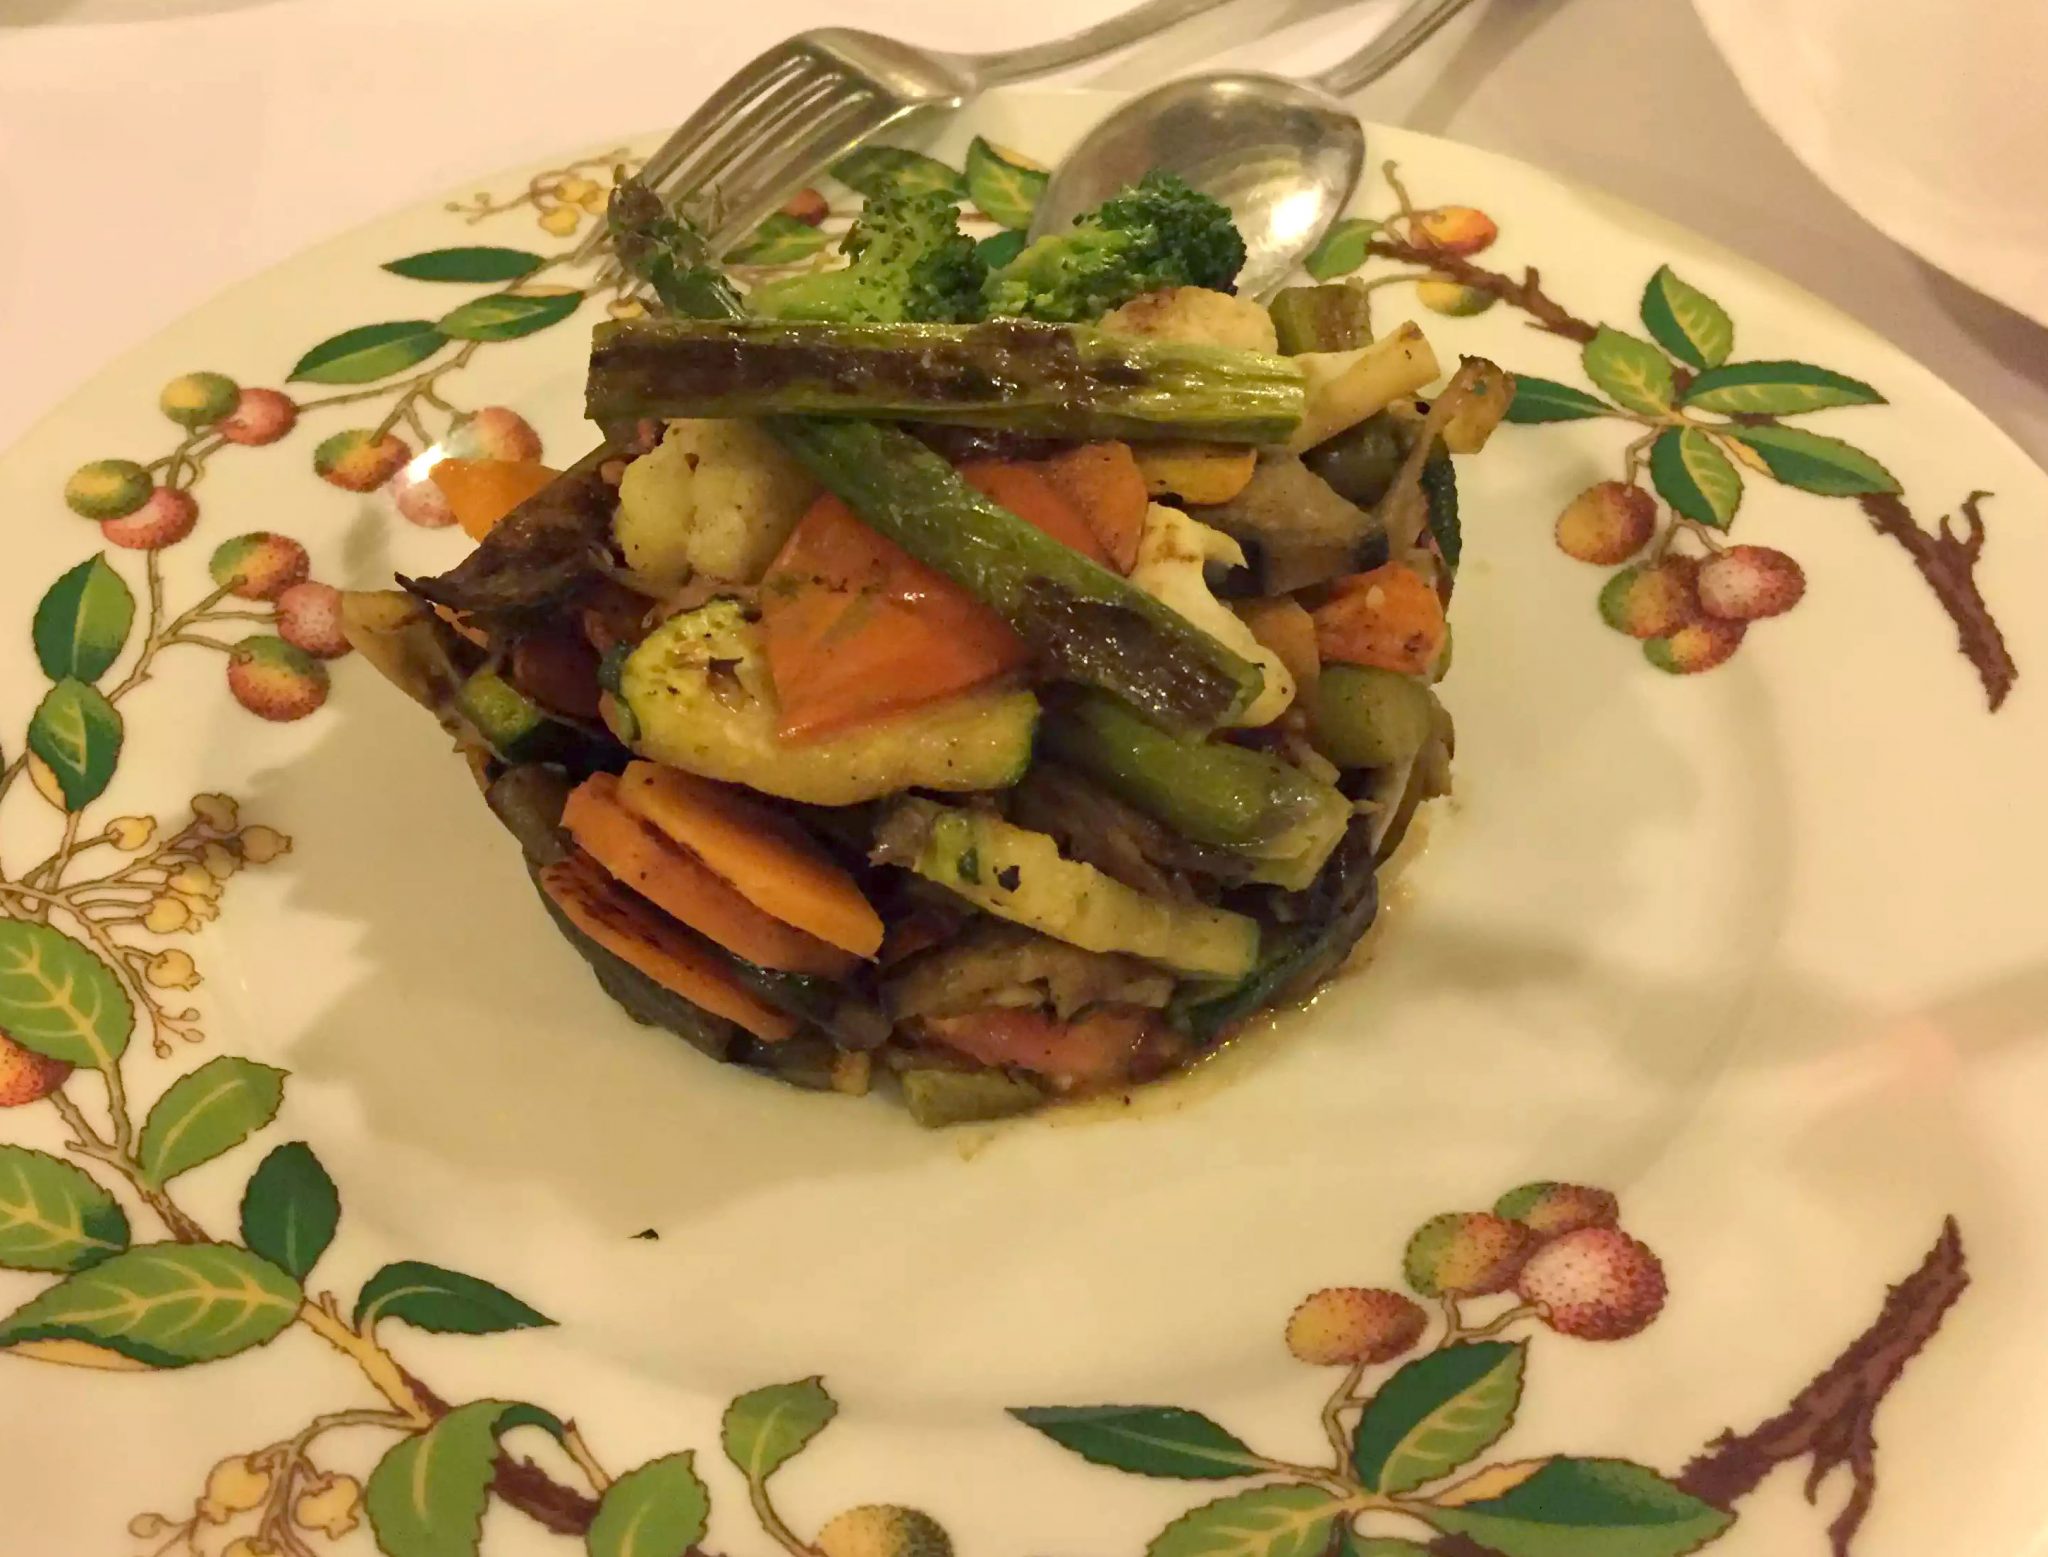 Posada de la Villa Madrid Dinner Restaurant Cava Baja Vegetables